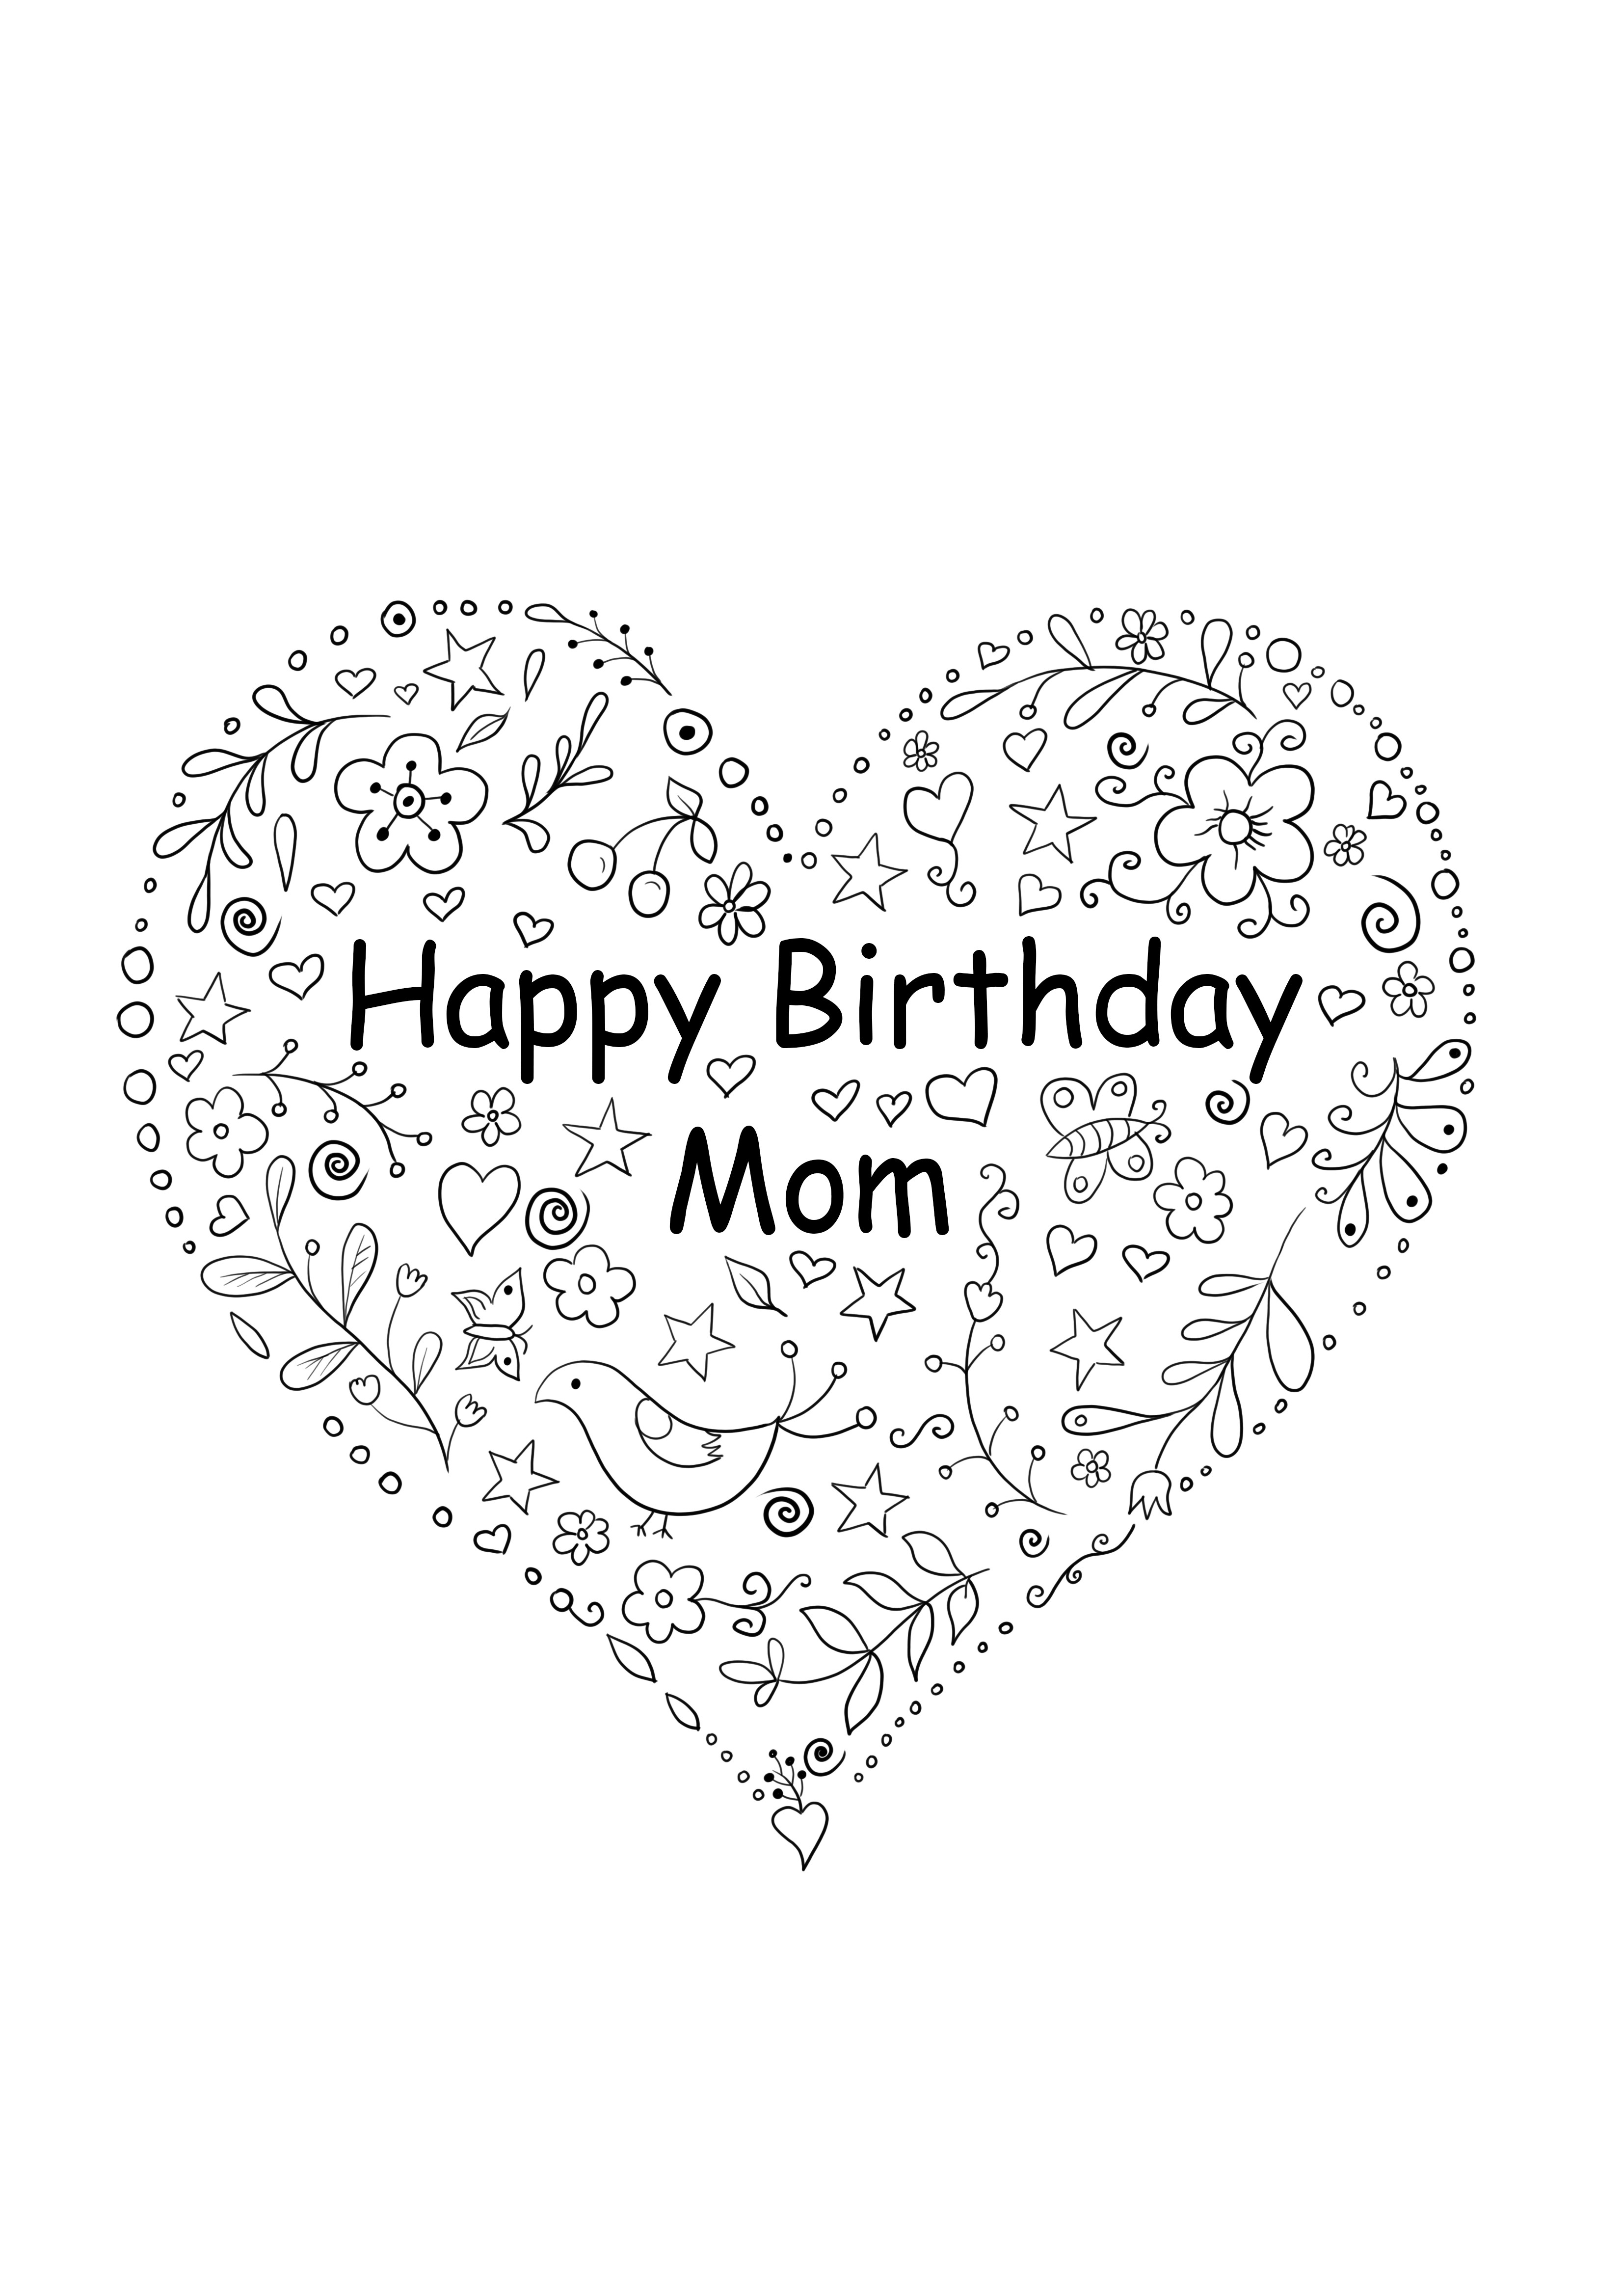 Tarjeta en forma de corazón para el cumpleaños de mamá para imprimir gratis